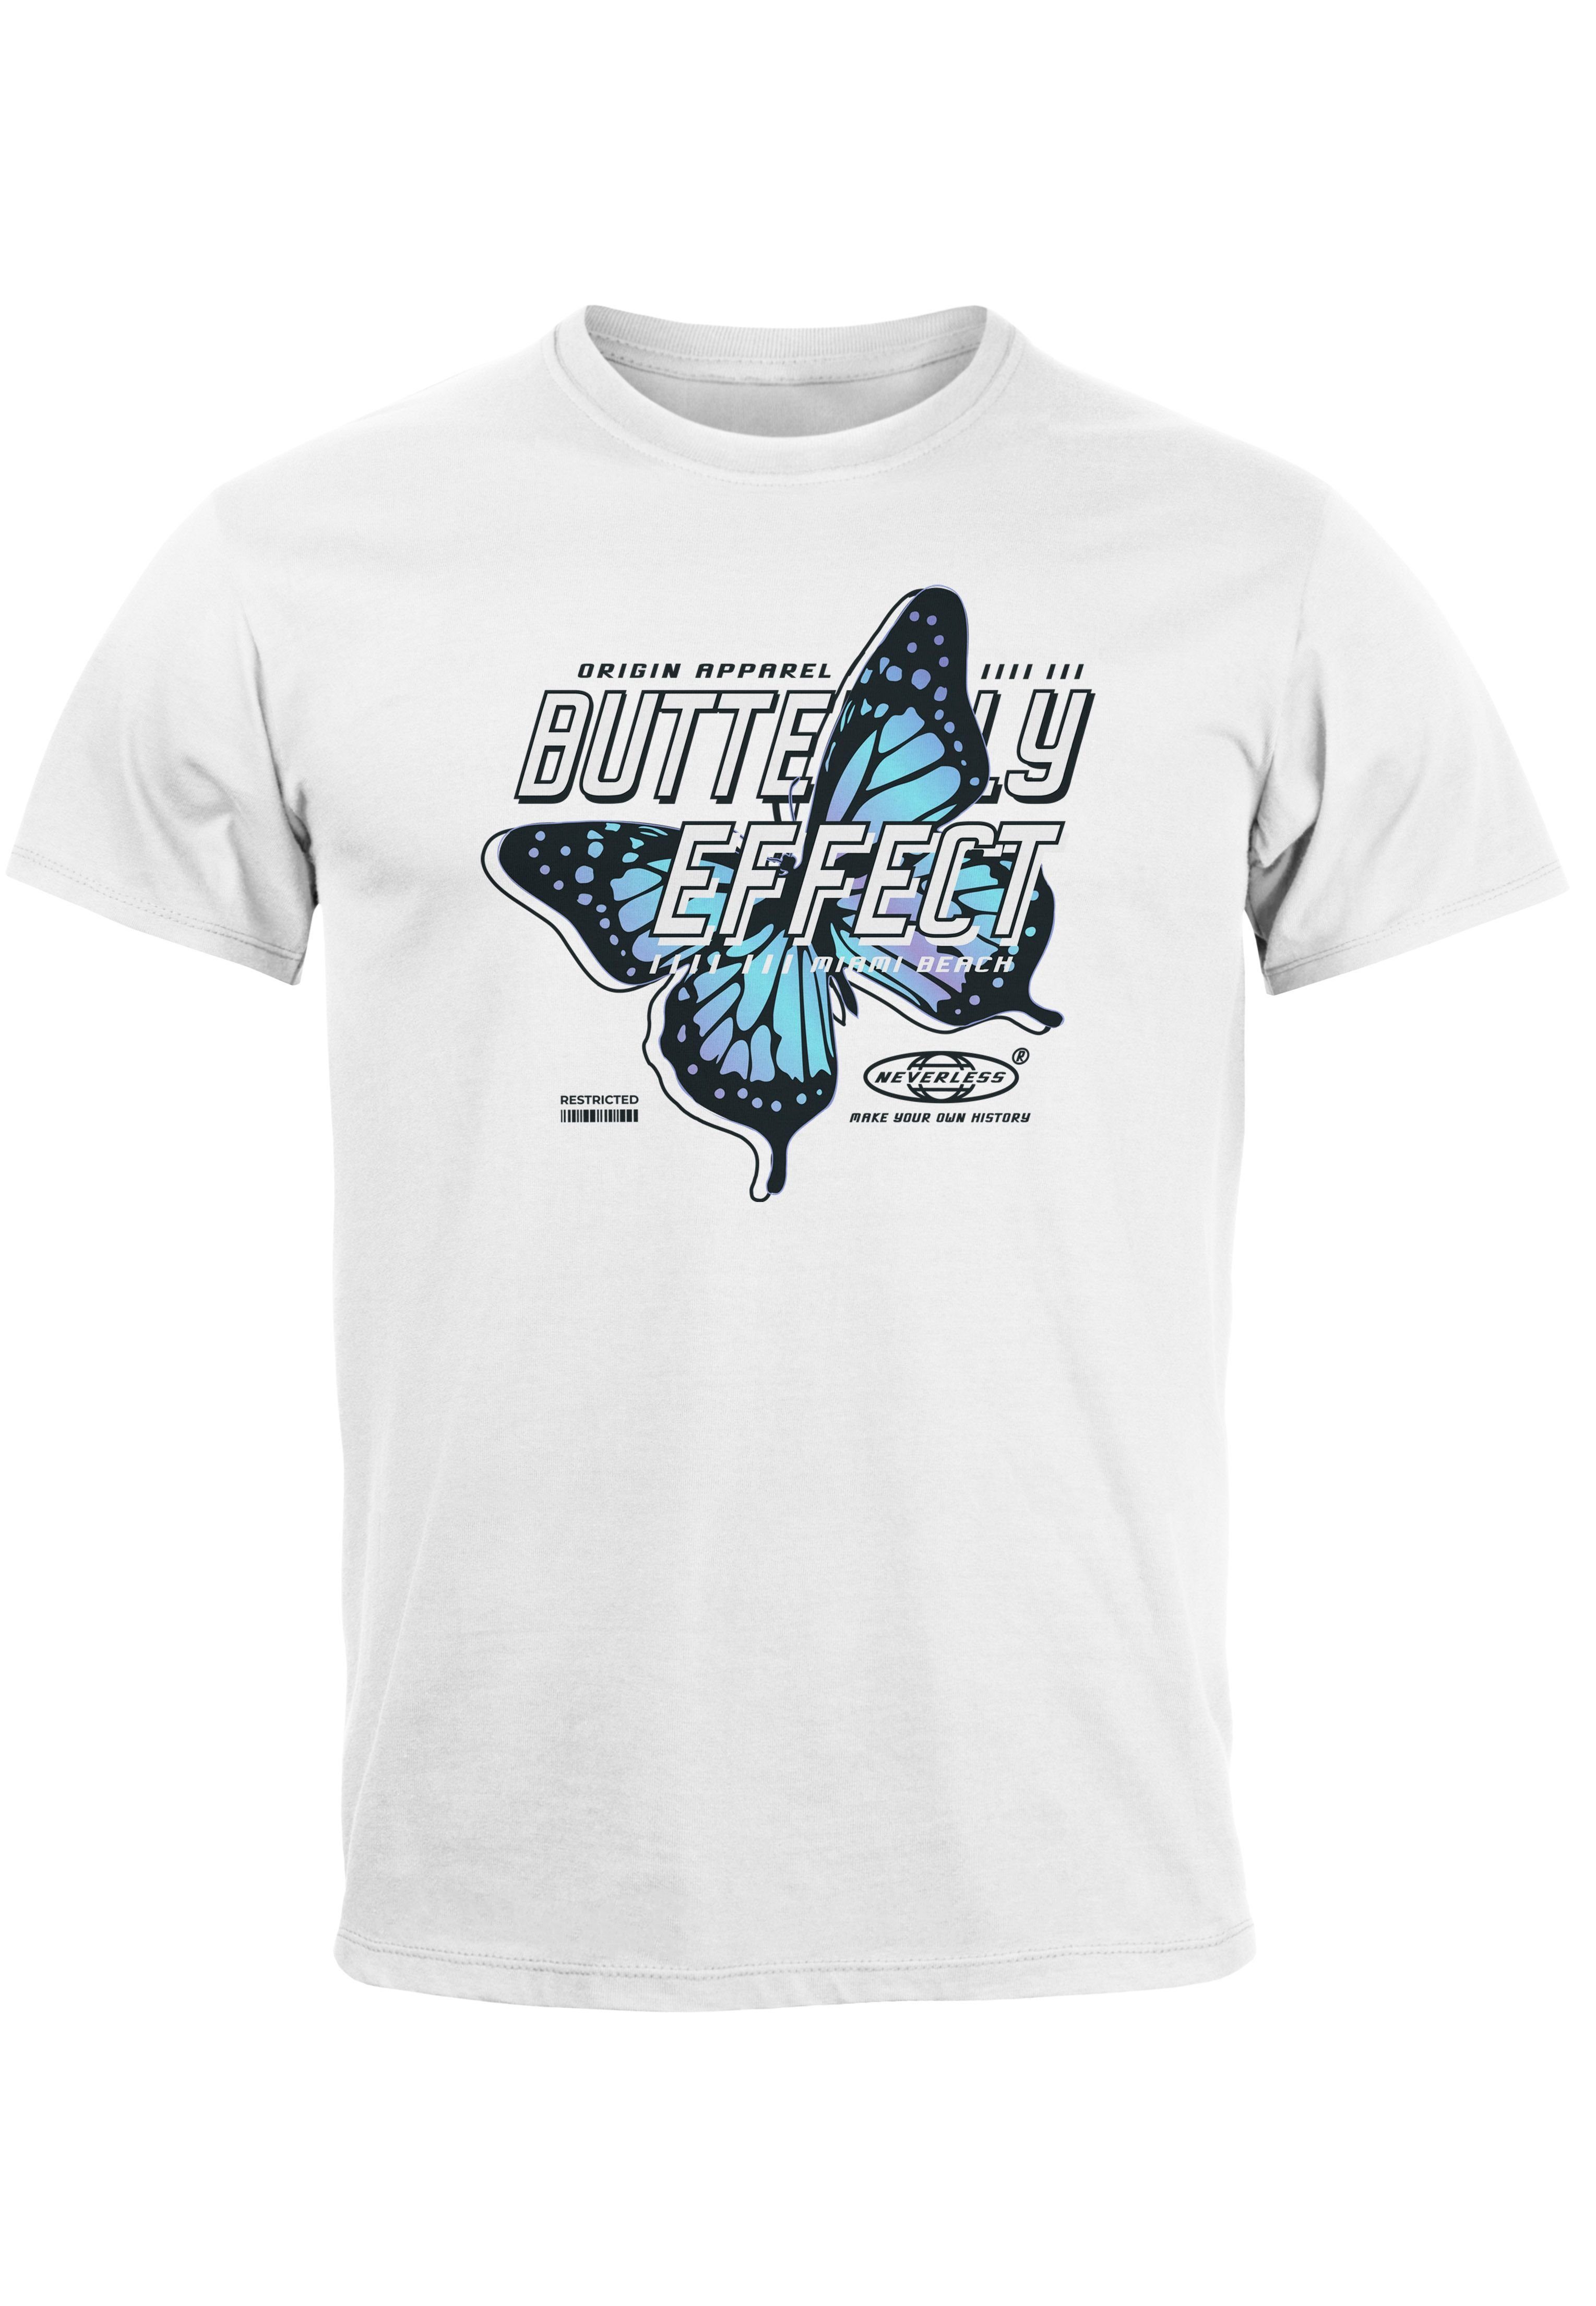 Neverless Print-Shirt Herren T-Shirt Bedruckt Schriftzug Butterfly Effect Schmetterling Fash mit Print weiß